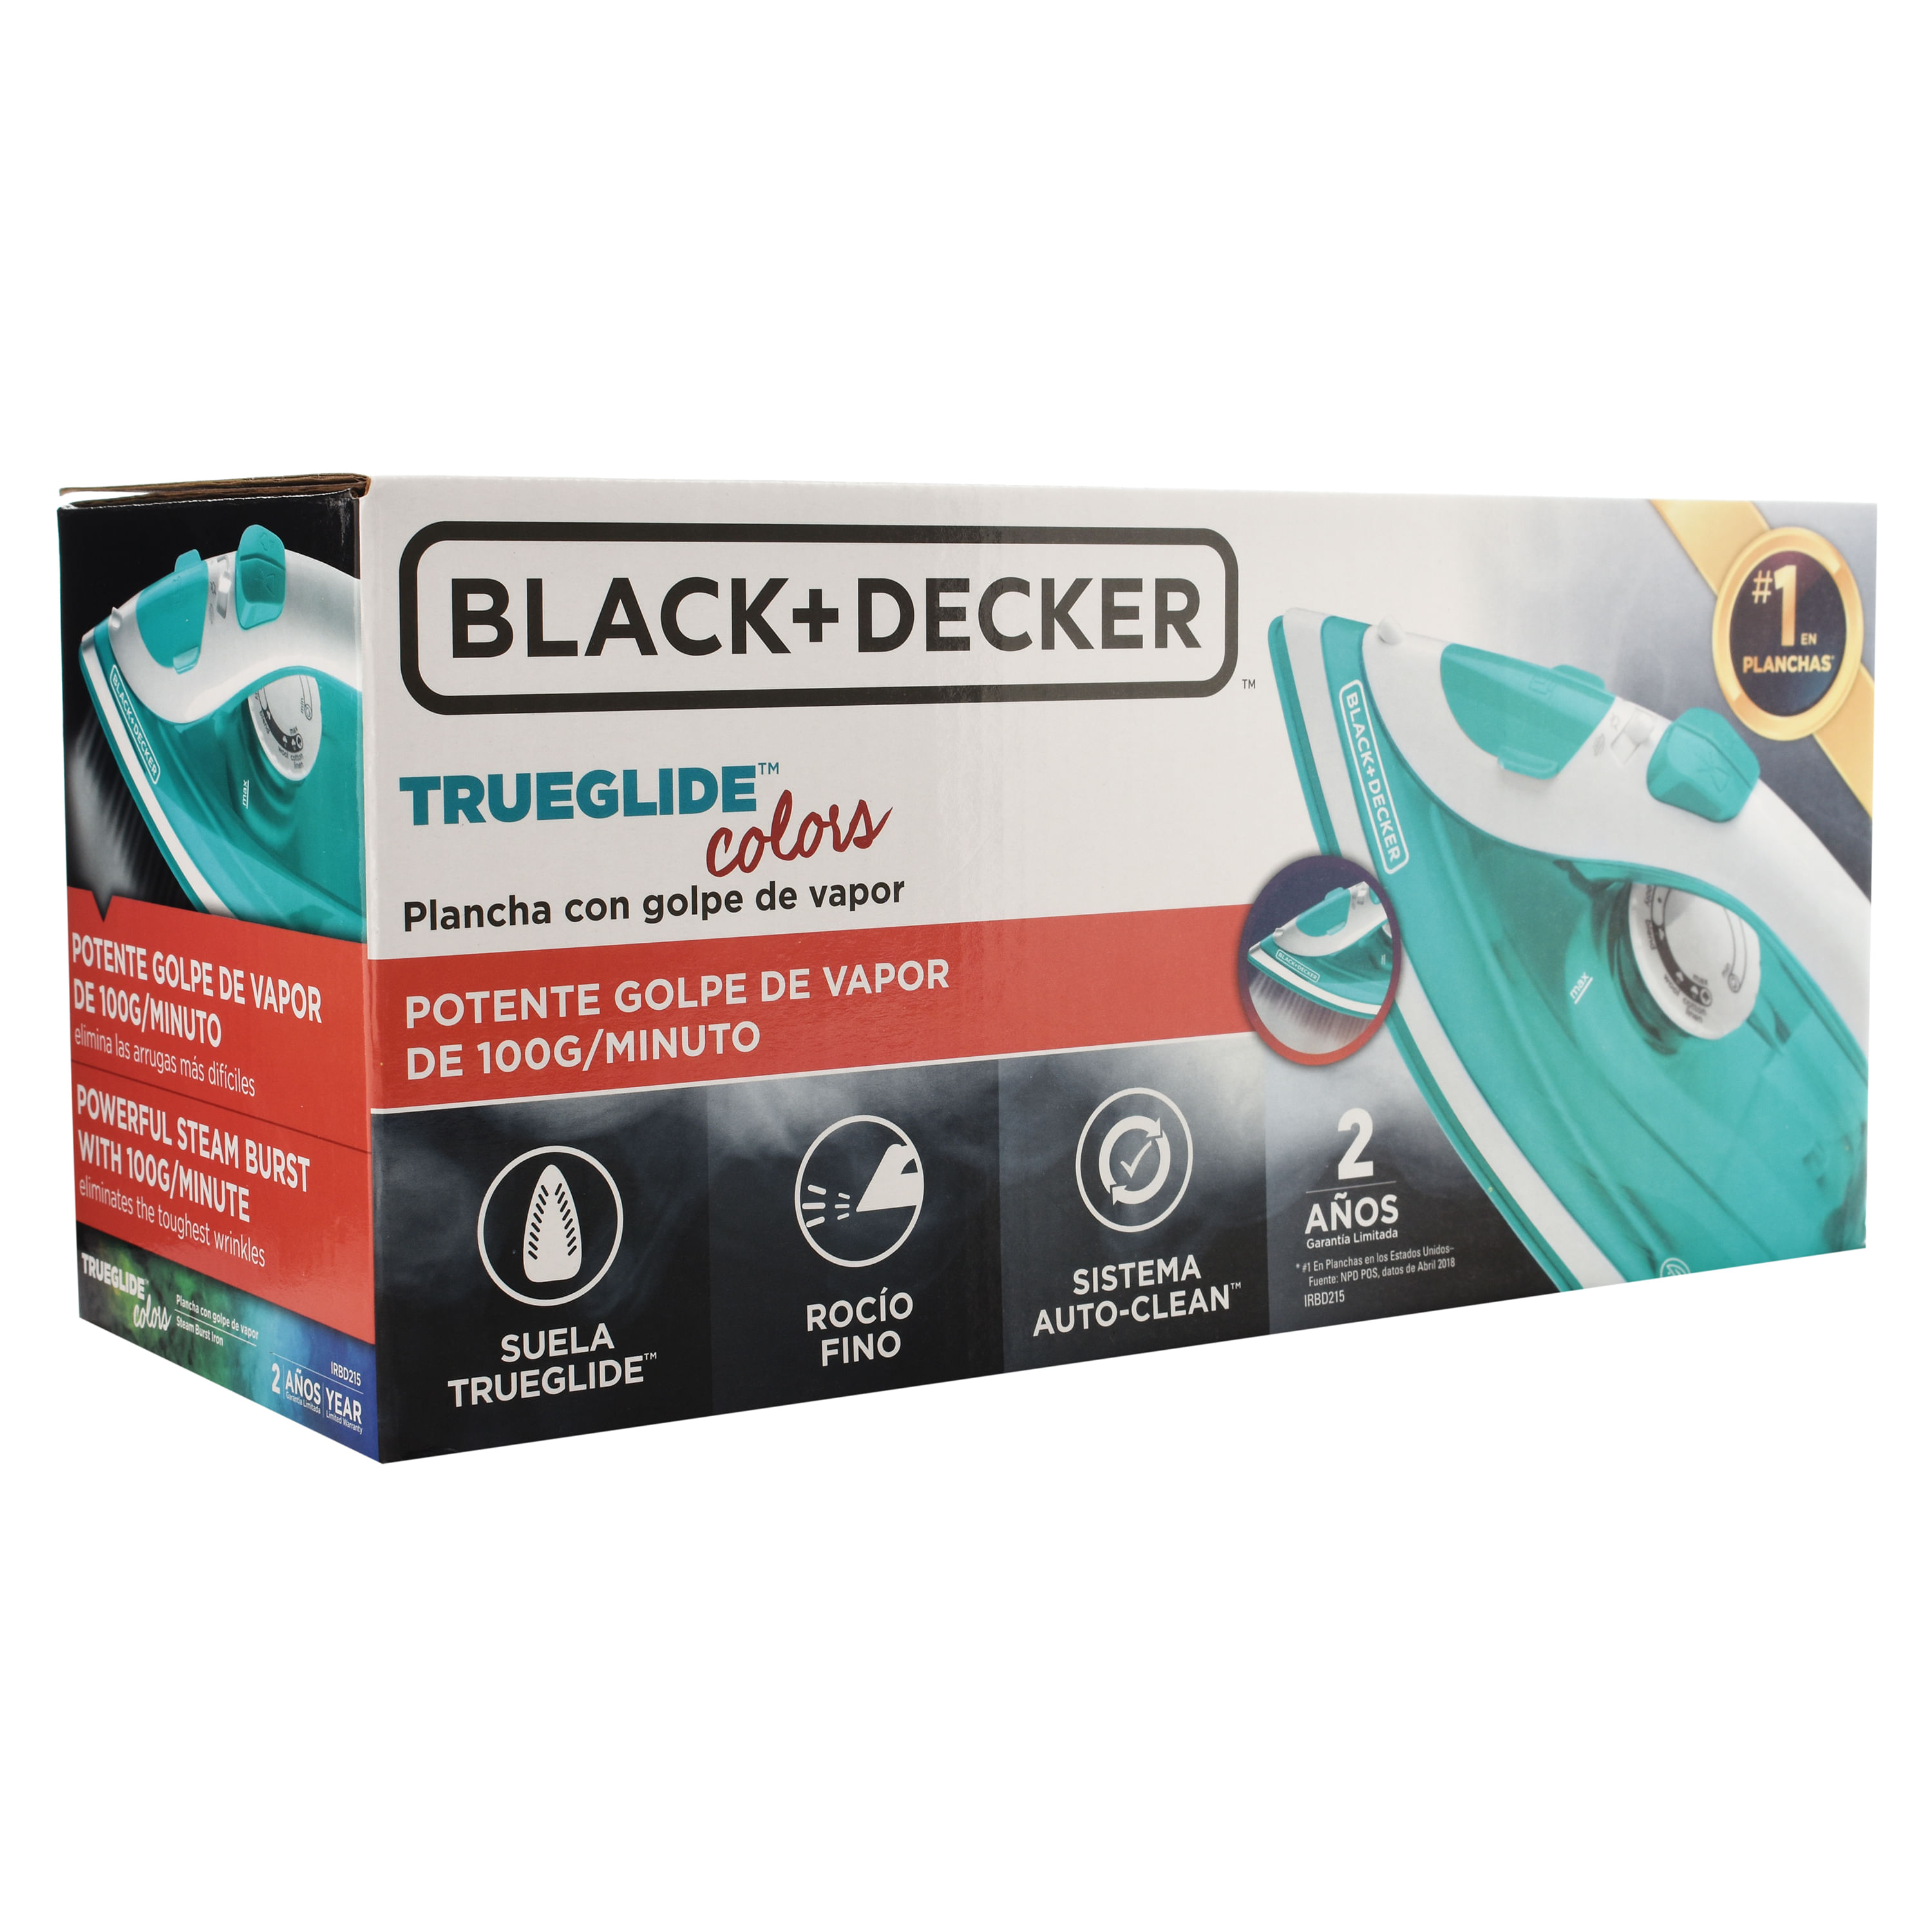  ​Plancha de vapor Black + Decker, liviana y fácil de